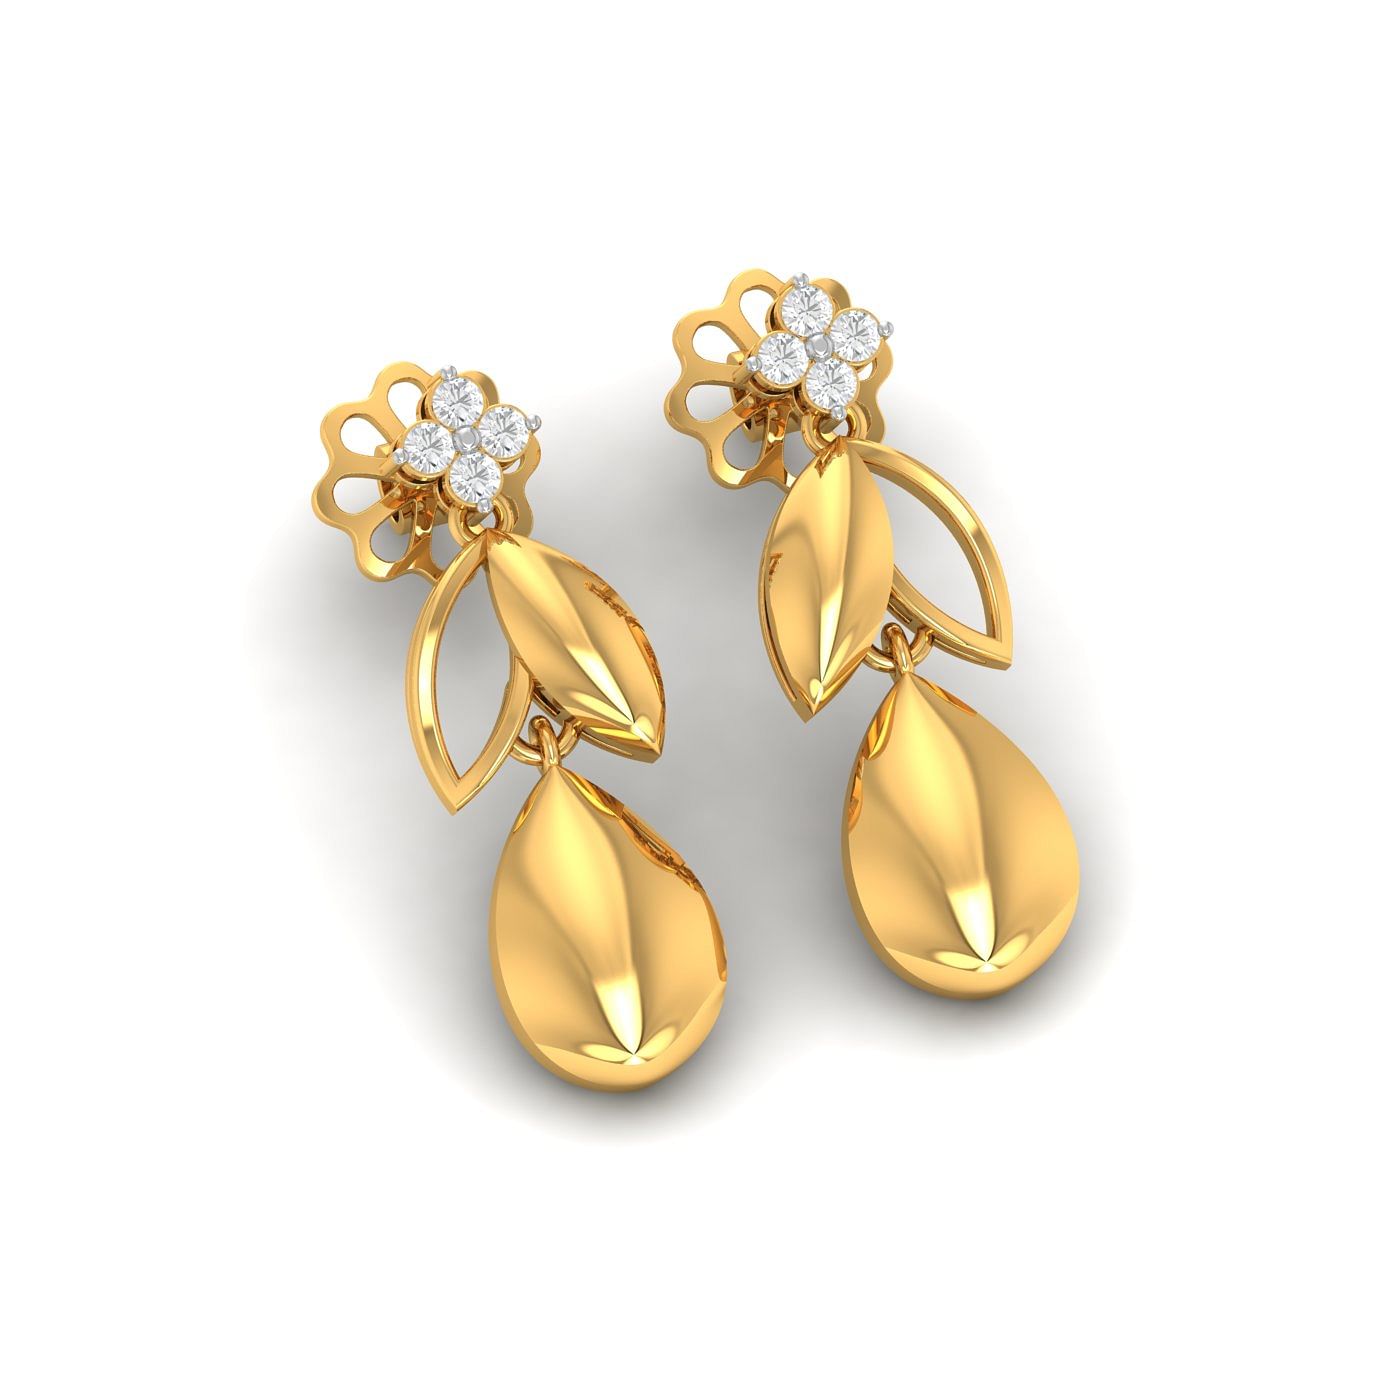 Yellow gold Freesia Diamond Drop Earrings